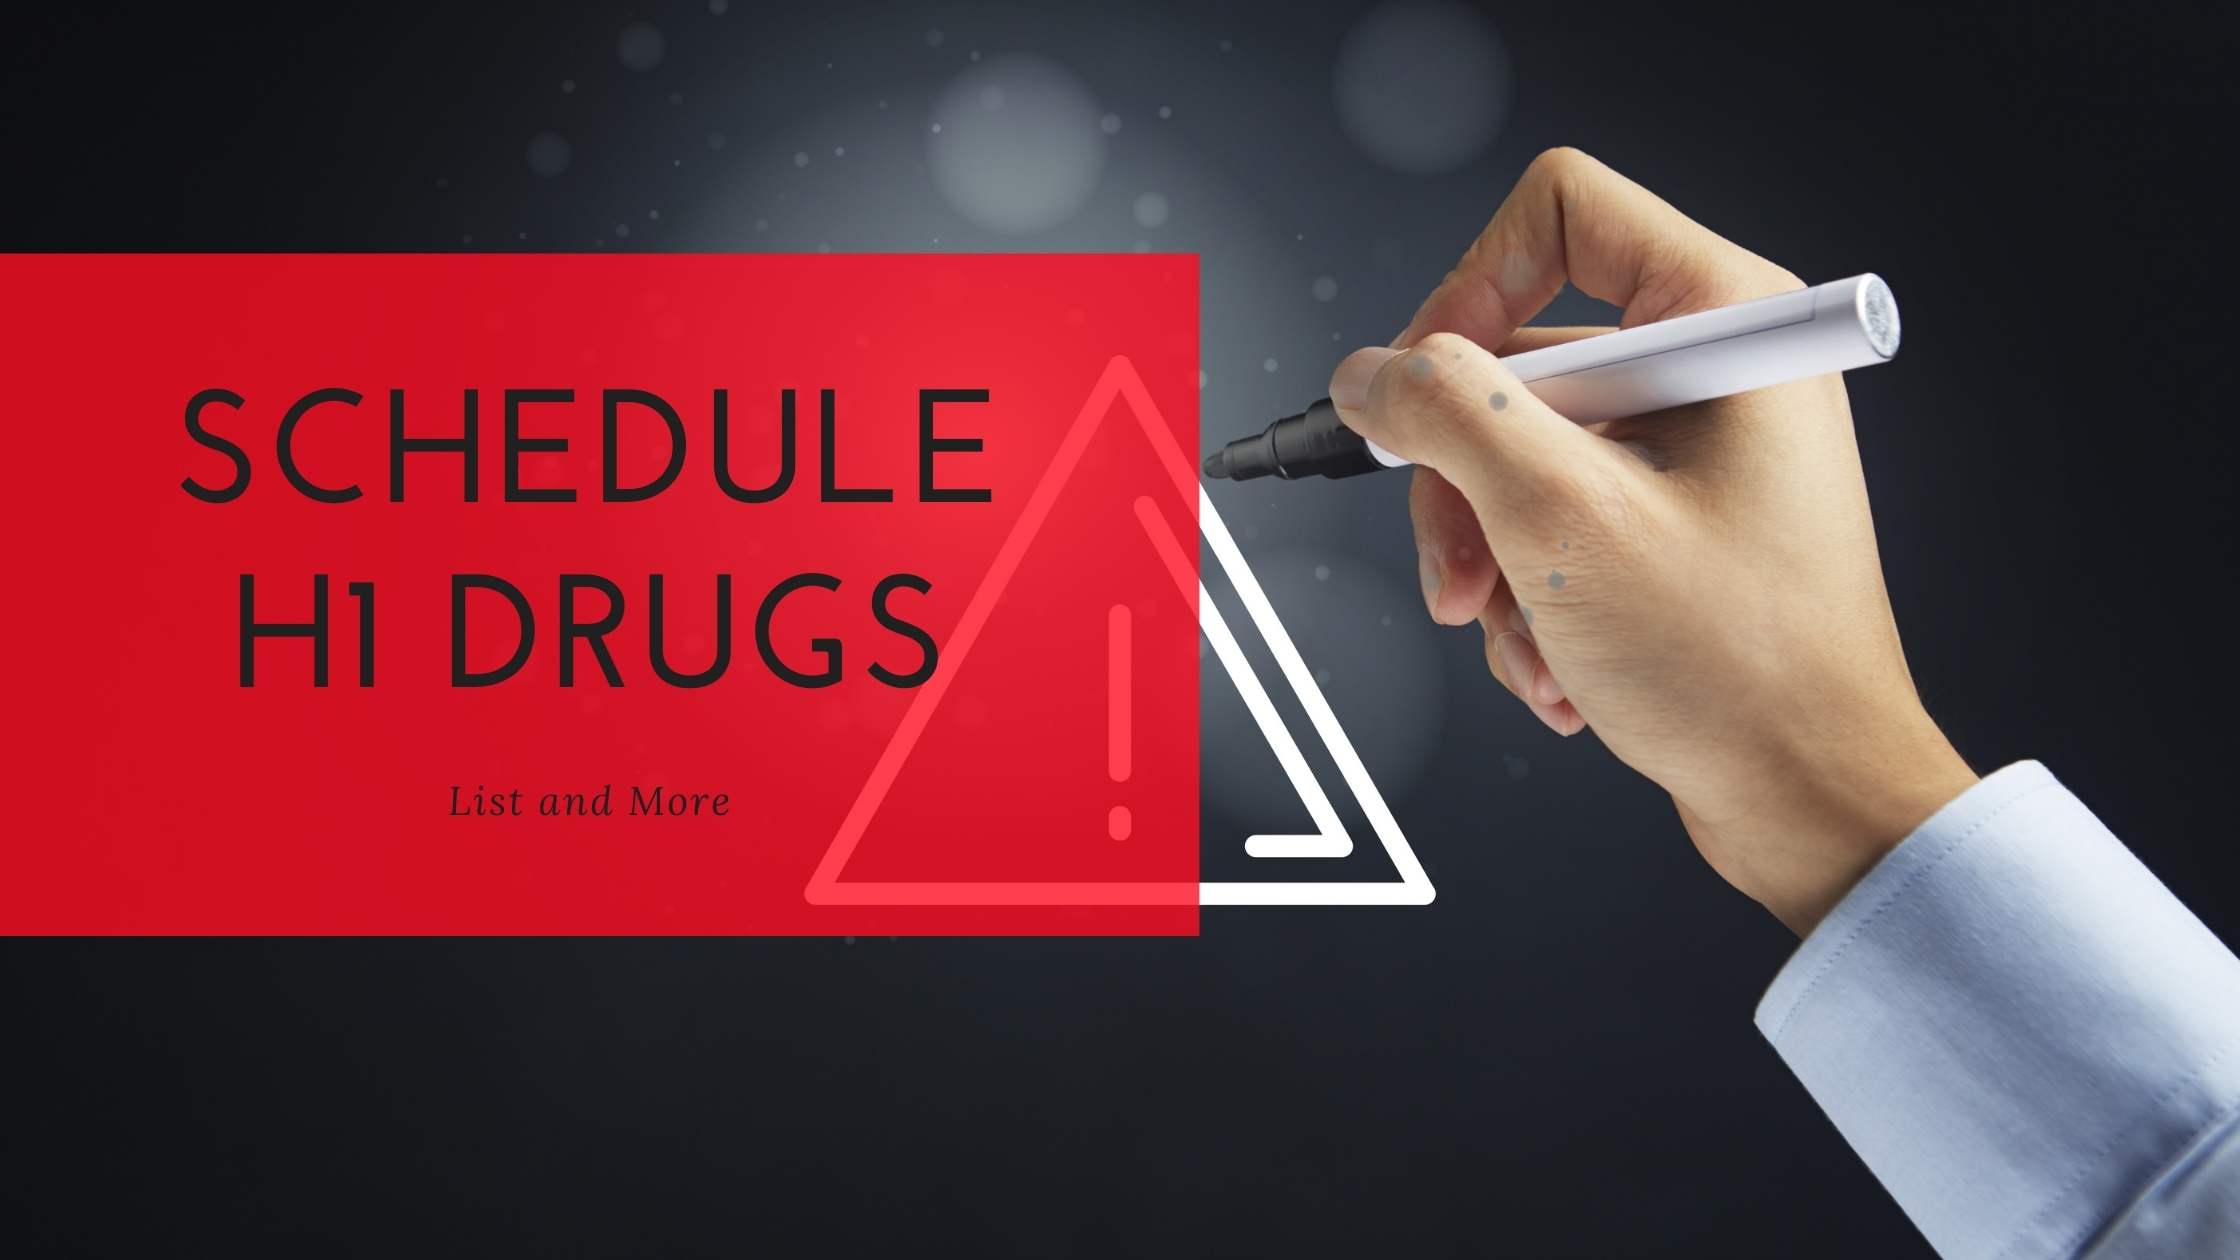 Schedule H1 Drugs List